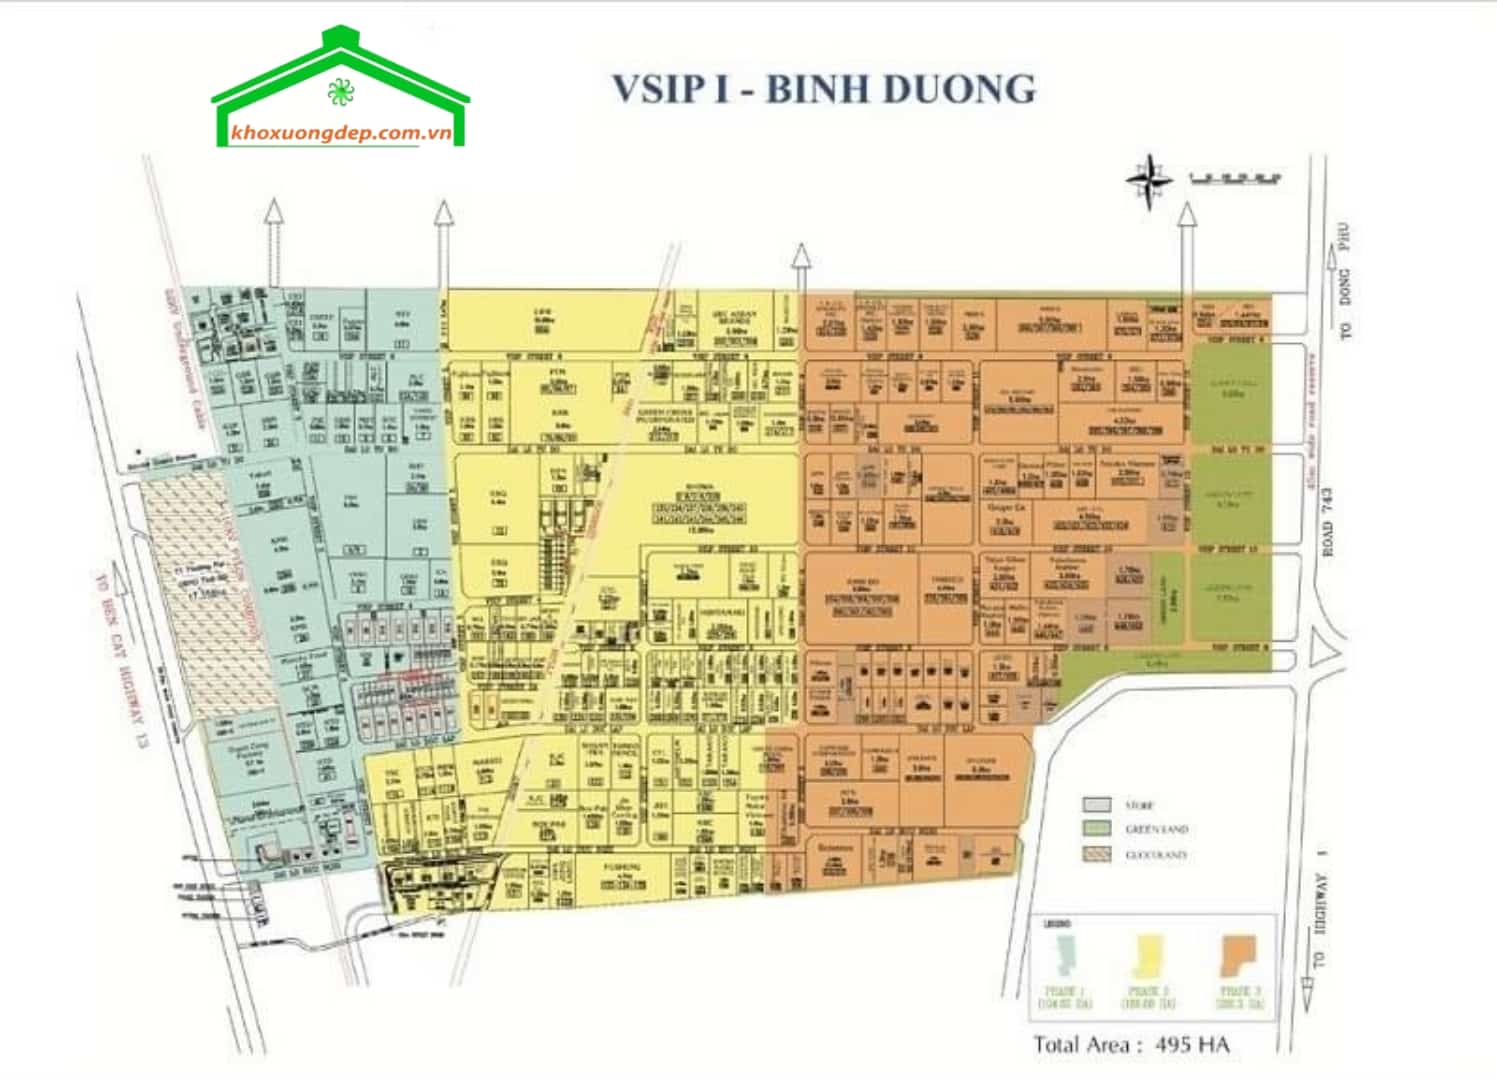 Bản đồ quy hoạch khu công nghiệp Visip